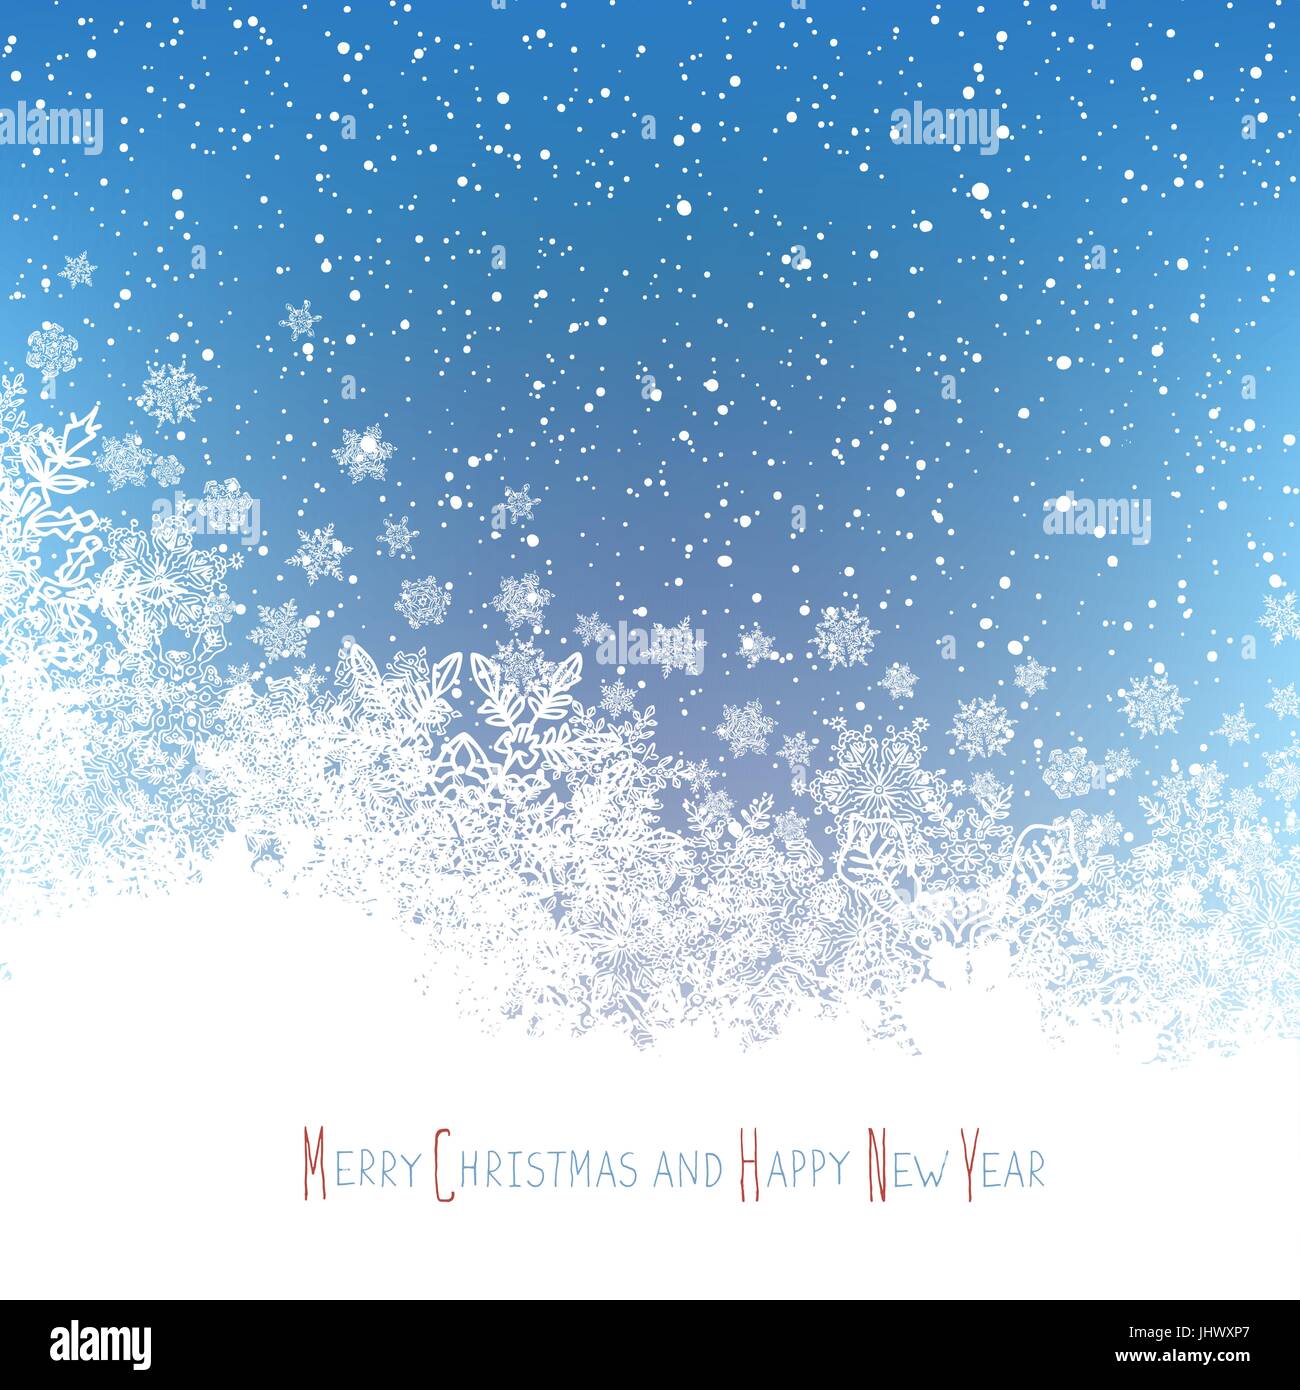 Weihnachts-Postkarte. Neujahrsgrüße. Isolierte Nachteil Bereich für Gruß. Blaue Winter Schneefall Hintergrund. Vektor-Illustration. Stock Vektor